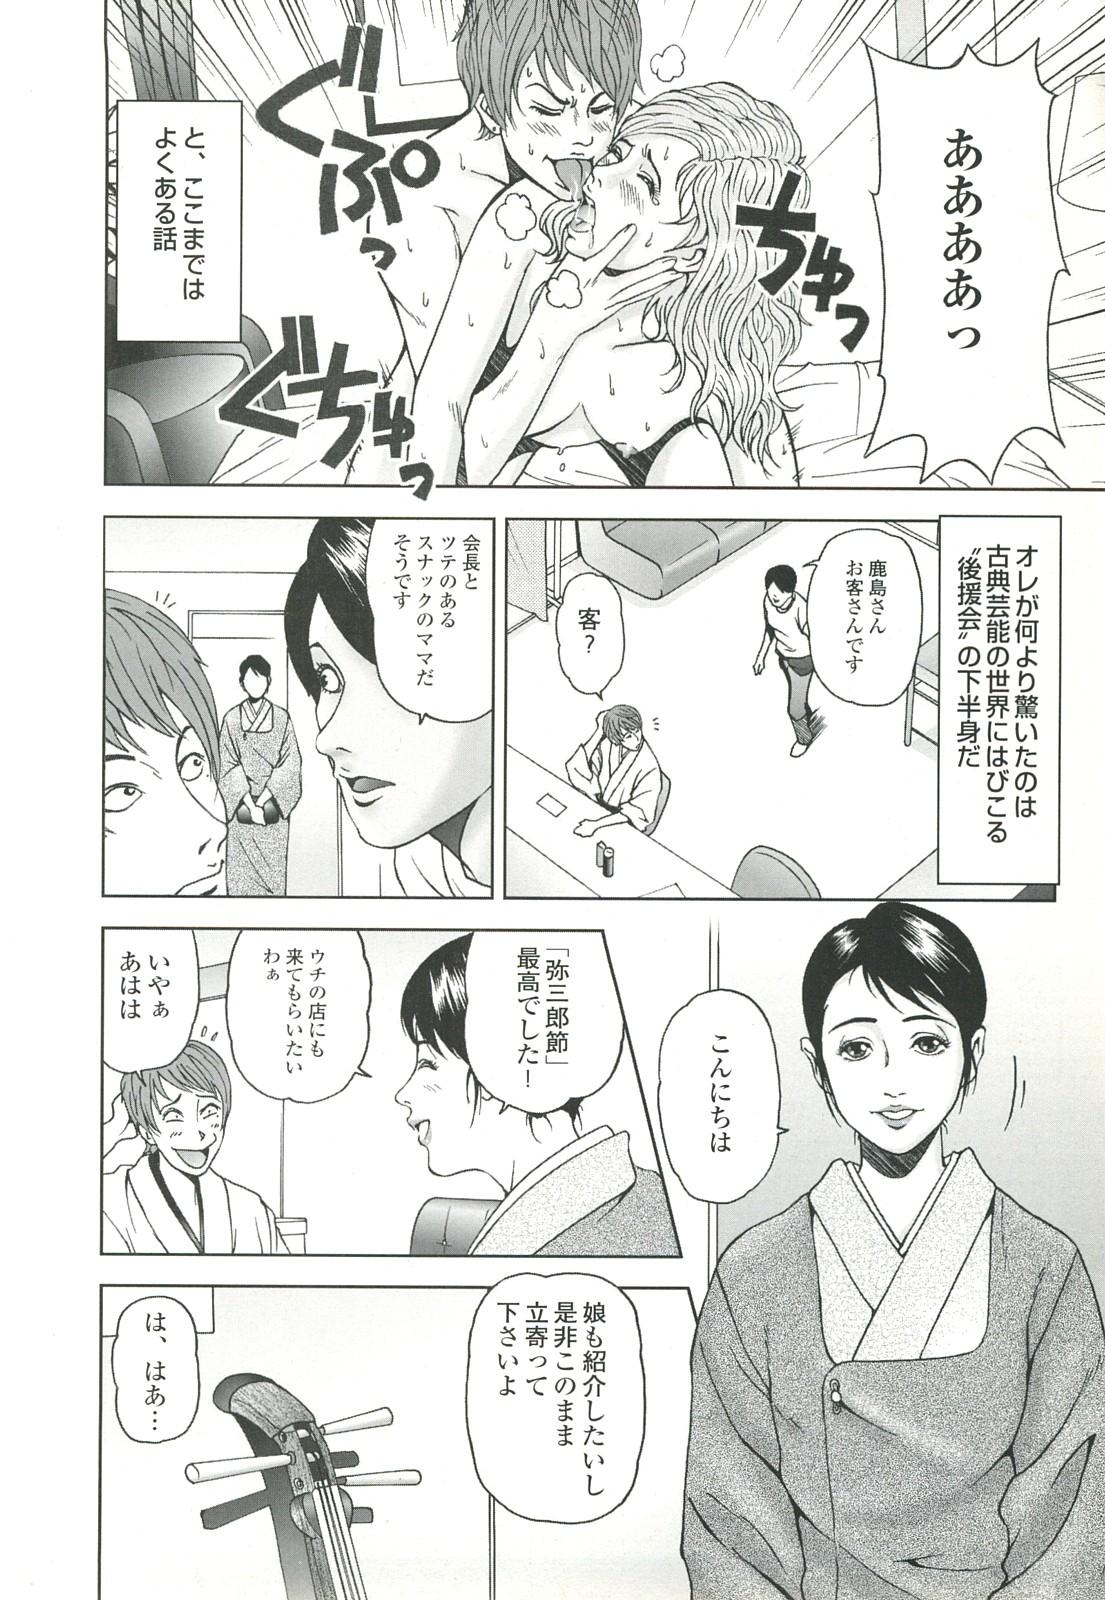 コミック裏モノJAPAN Vol.18 今井のりたつスペシャル号 29